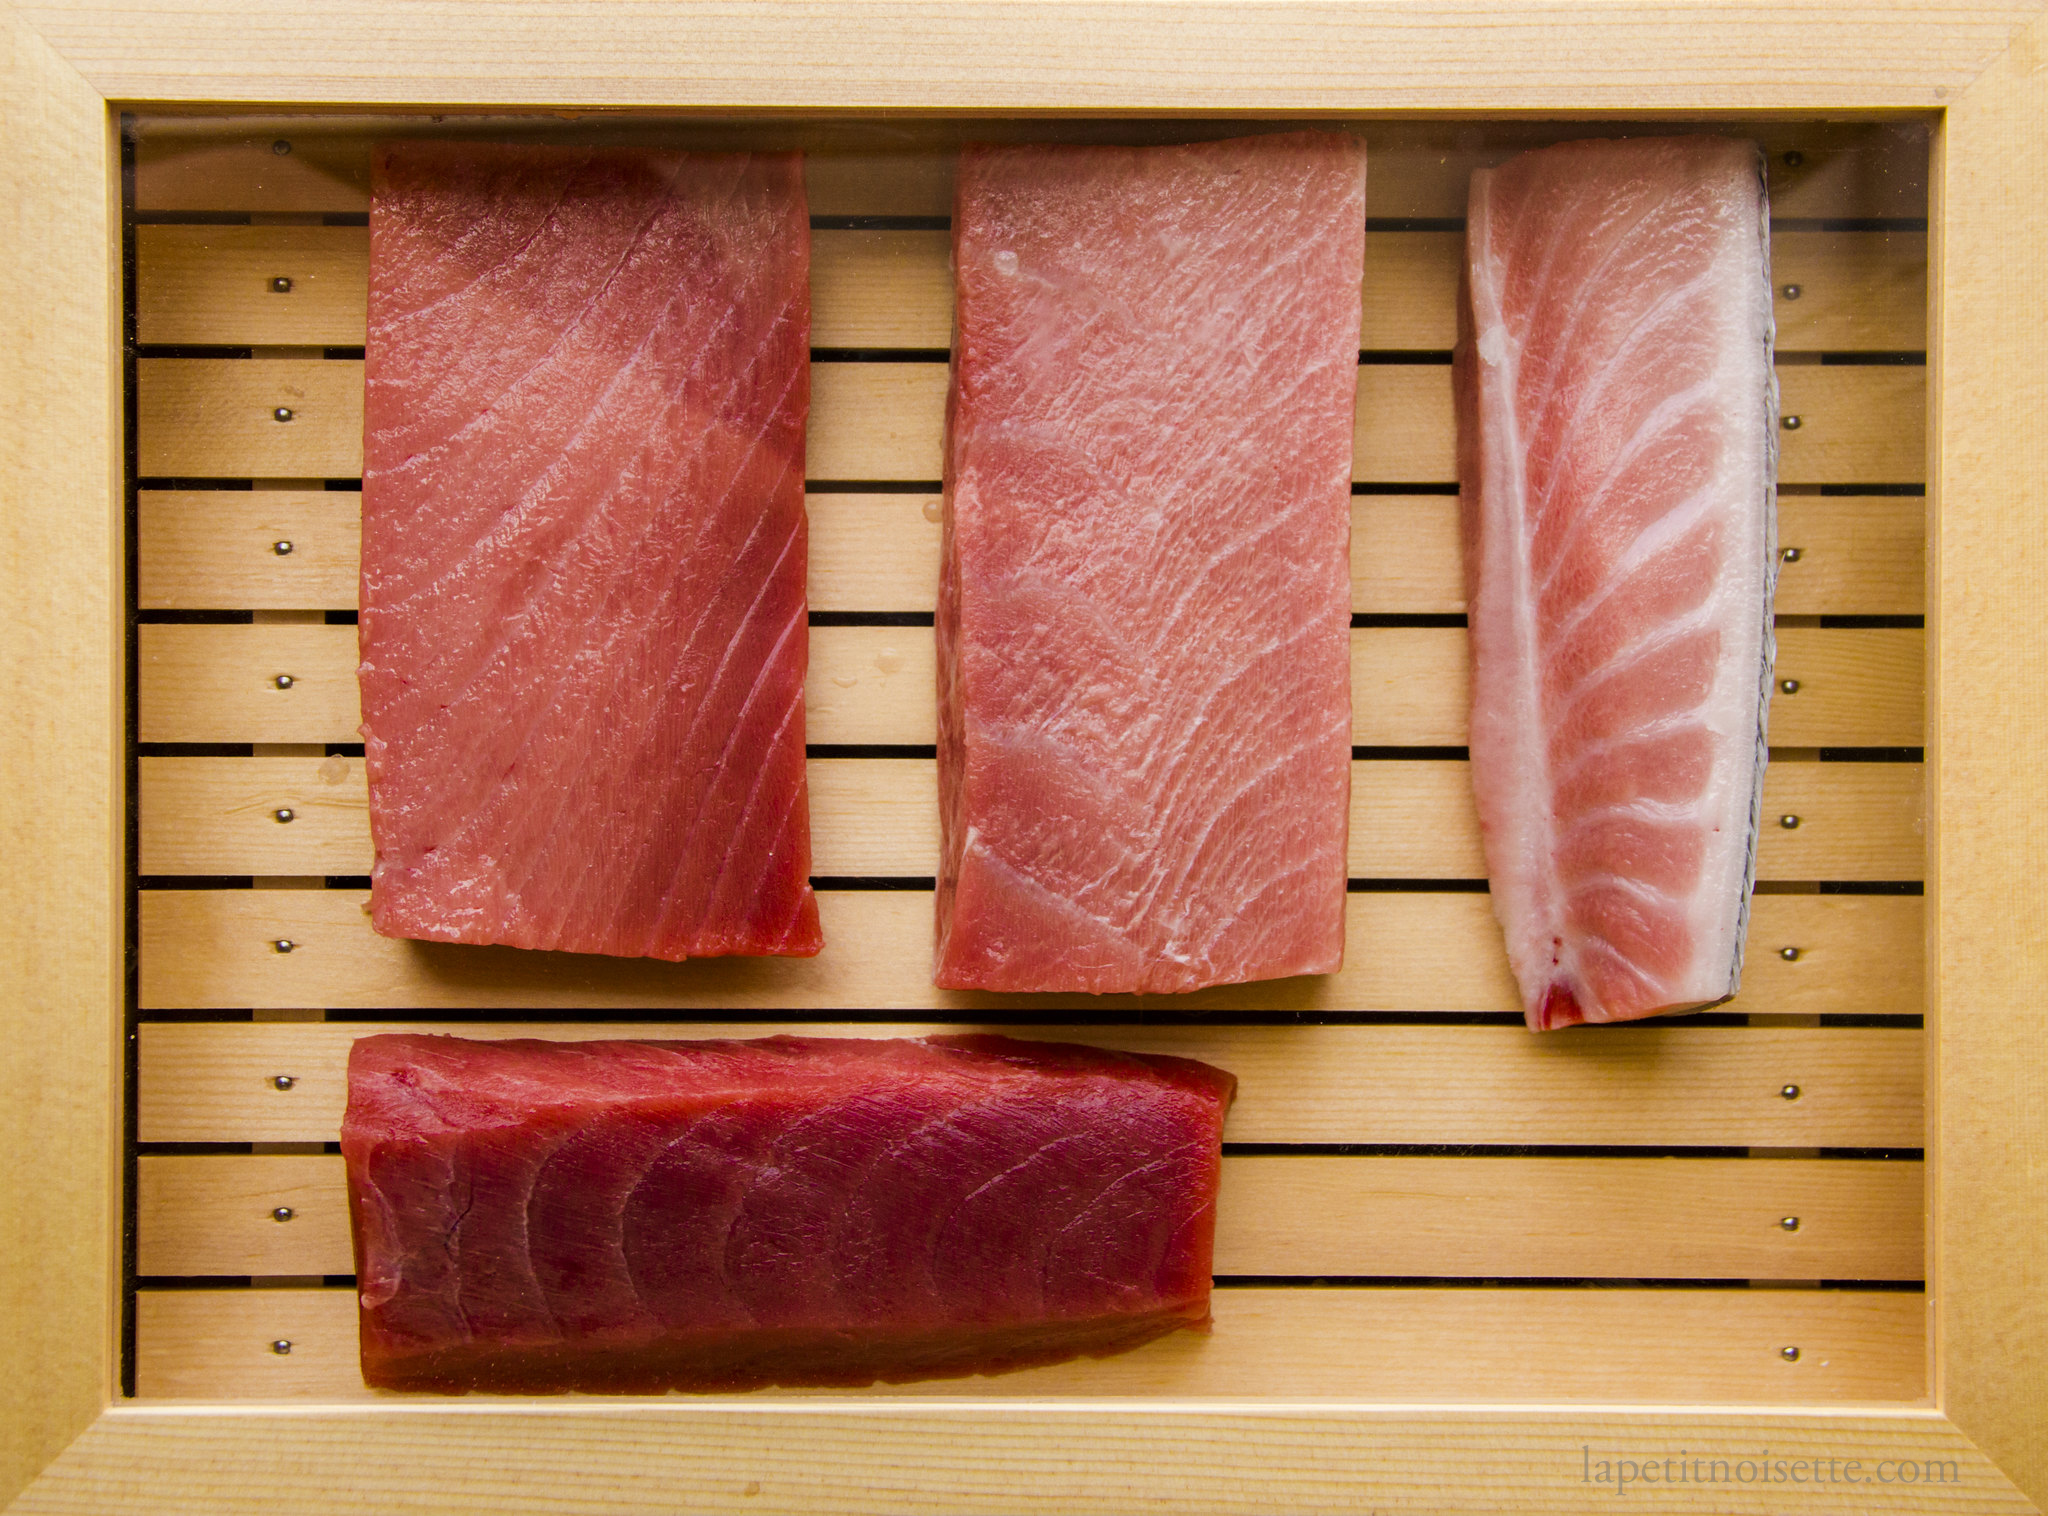 Aged tuna on display in a sushi box.